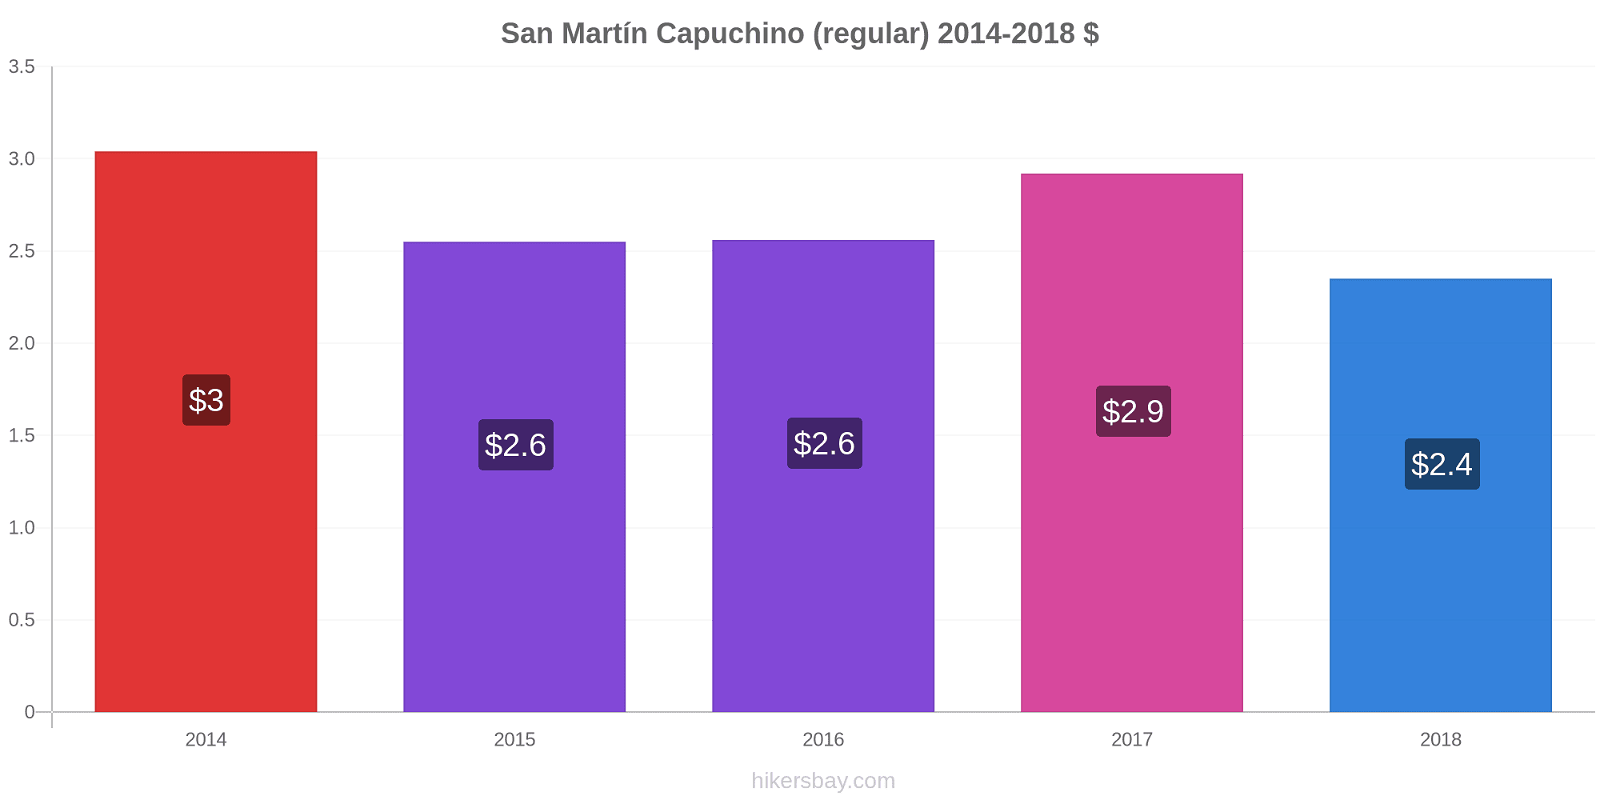 San Martín cambios de precios Capuchino (regular) hikersbay.com